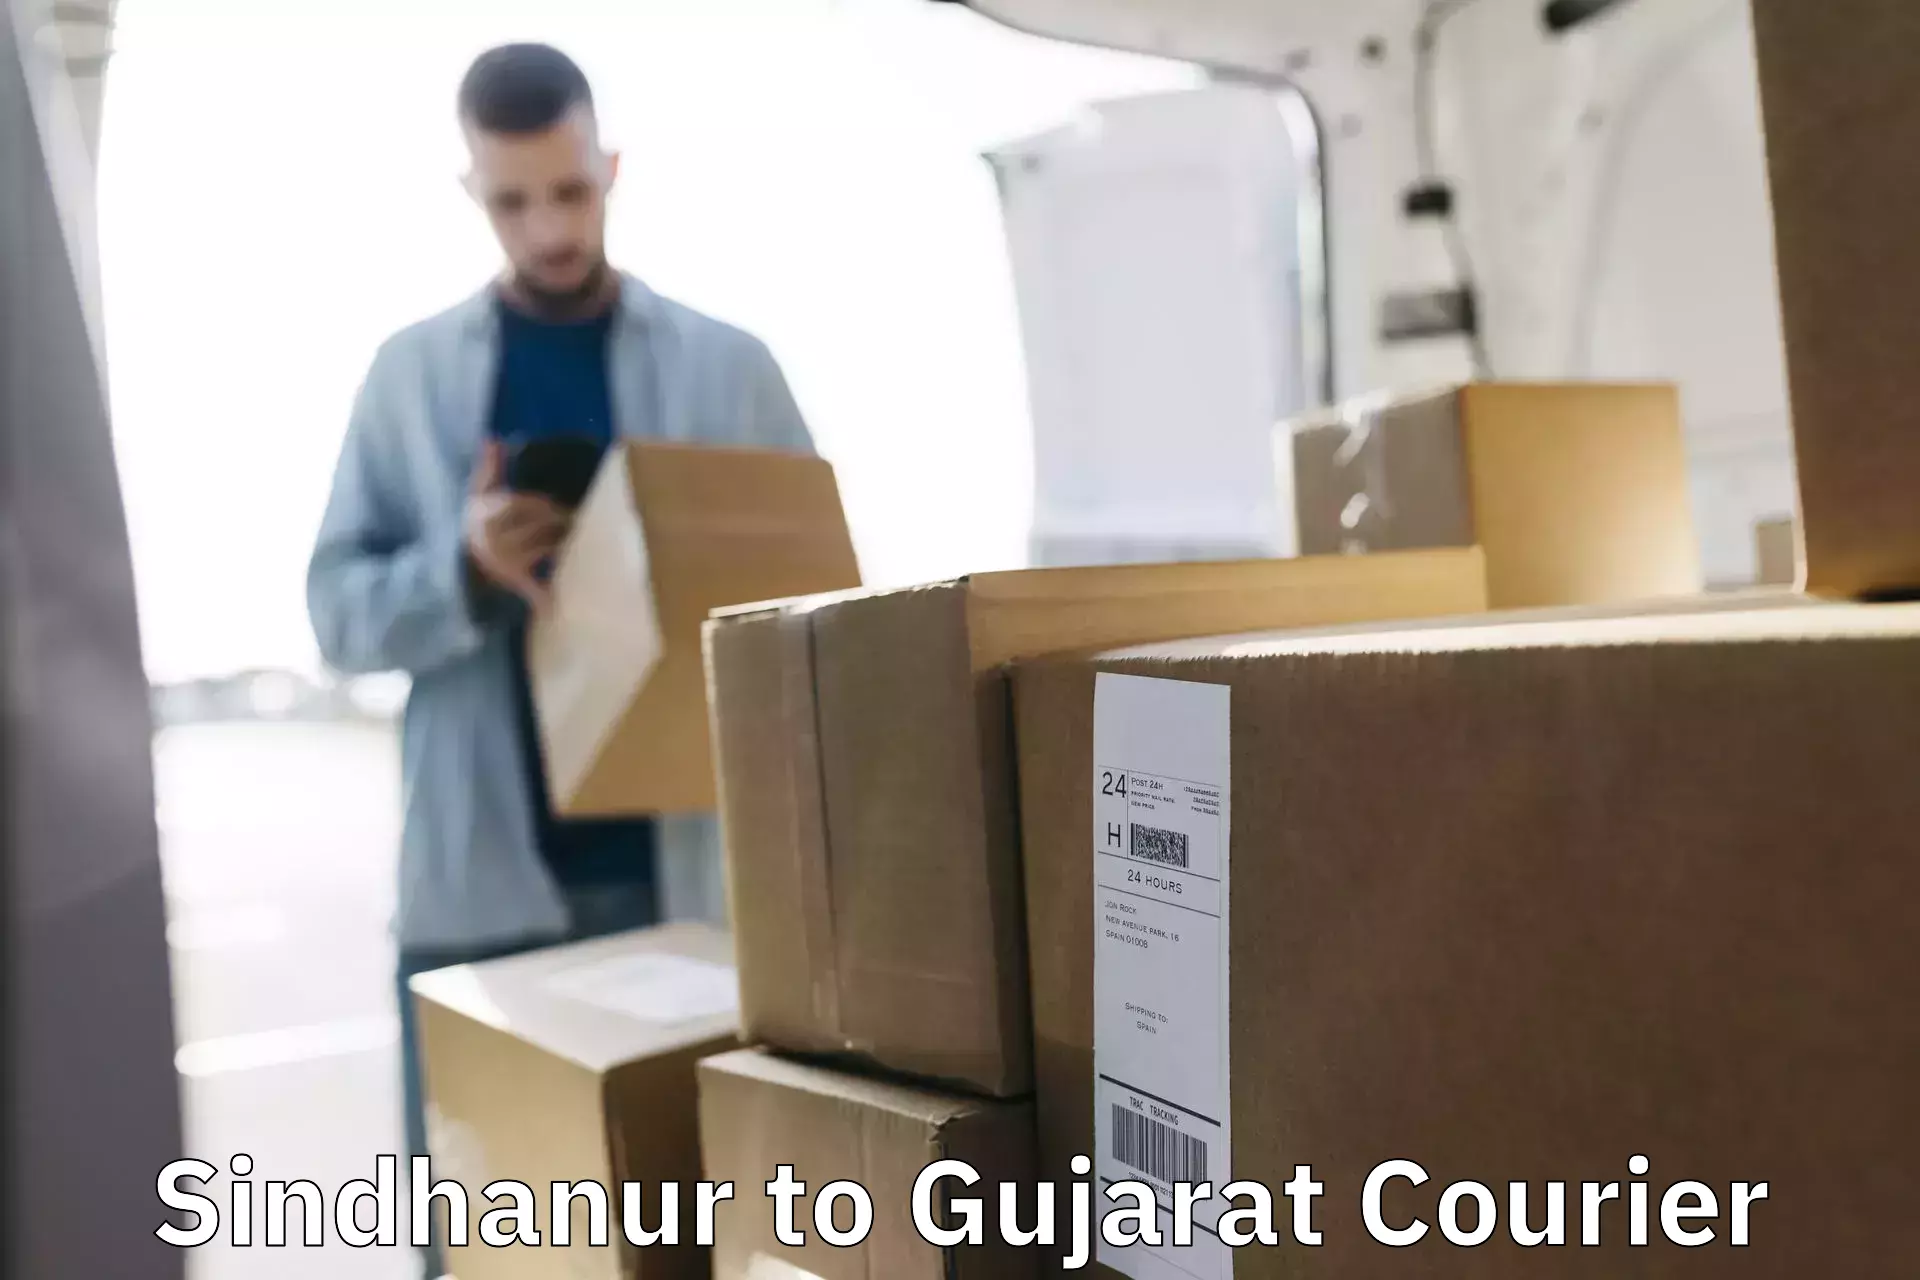 Professional courier handling Sindhanur to Dhandhuka